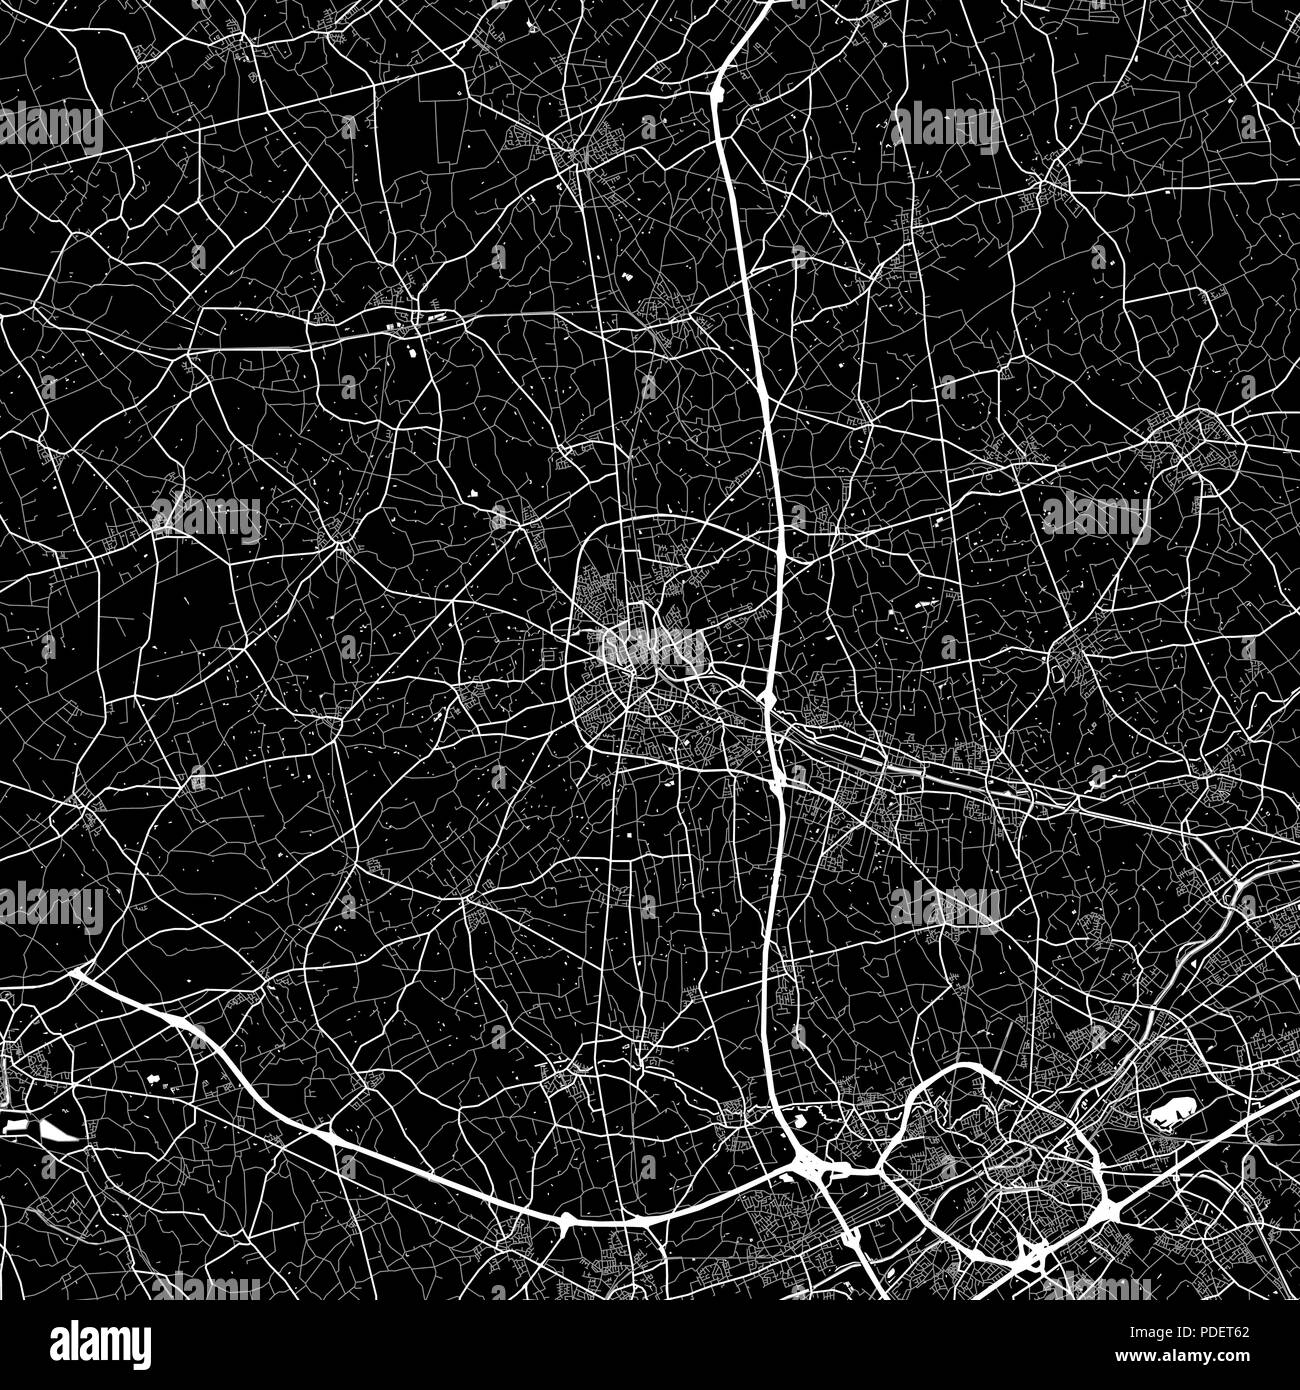 Lageplan von Roeselare, Belgien. Der dunkle Hintergrund Version für Infografik und Marketing. Diese Karte von Roeselare, Flämische Region, enthält Straßen, ... Stock Vektor